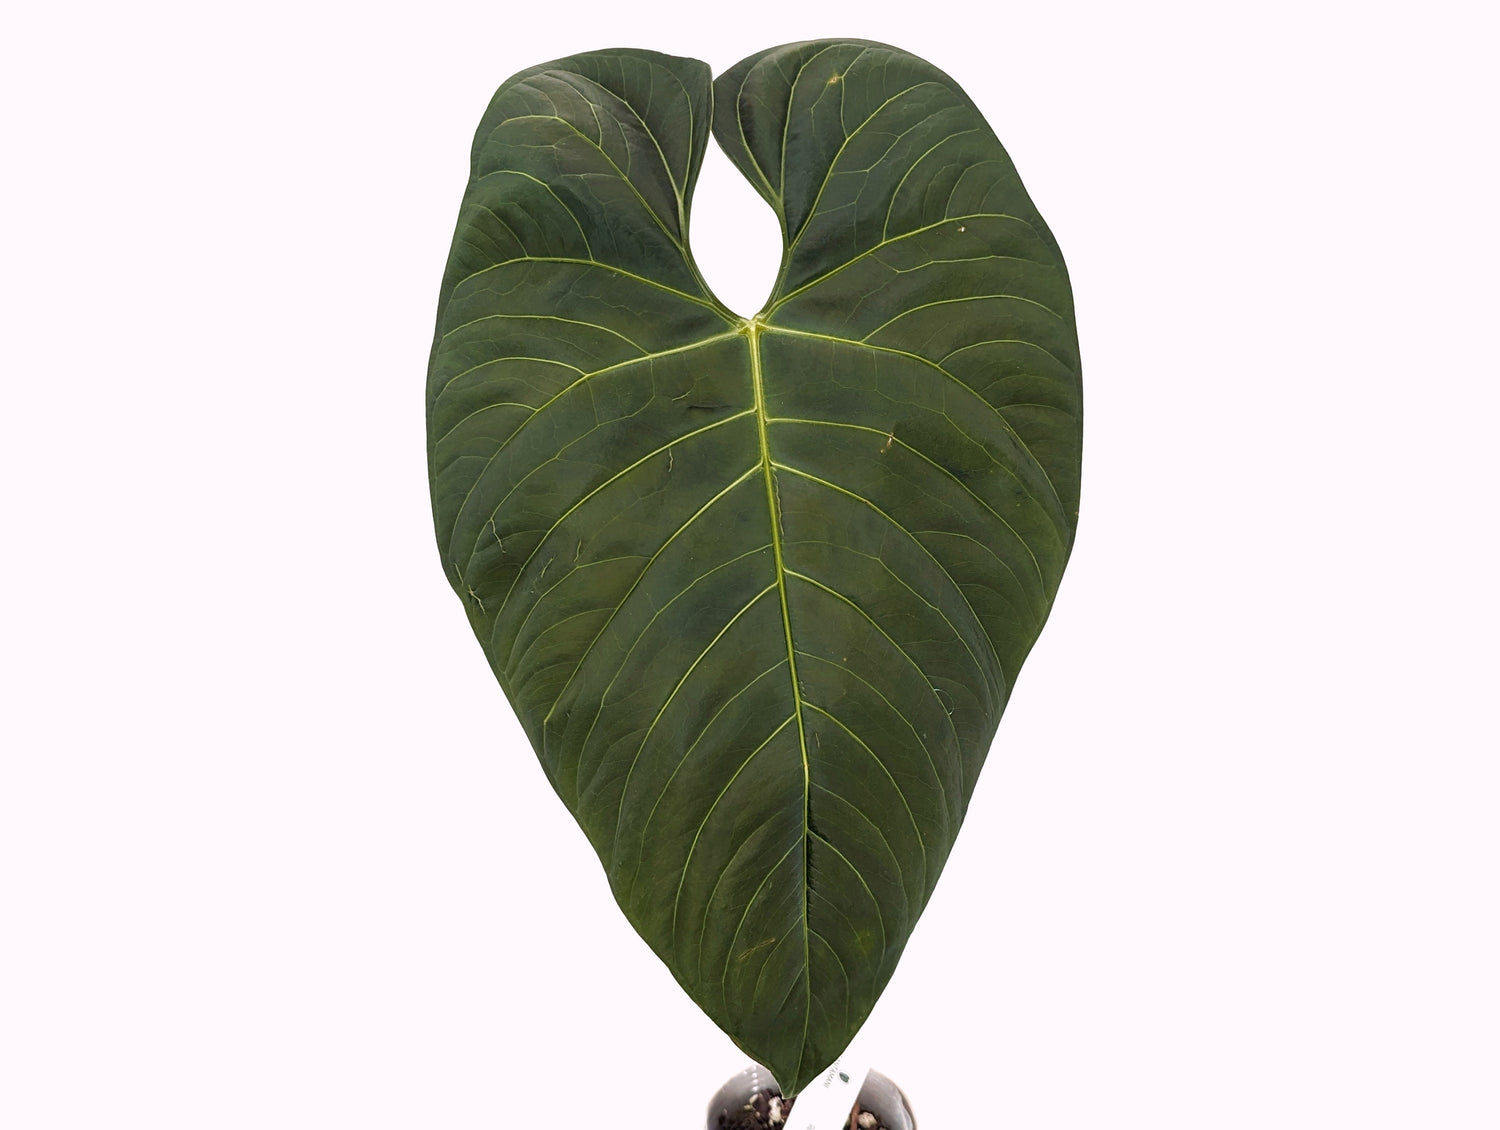 Anthurium Regale Verde XL Mature Plant approx 18&quot; tall- Exact Specimen Shown Plant ID 